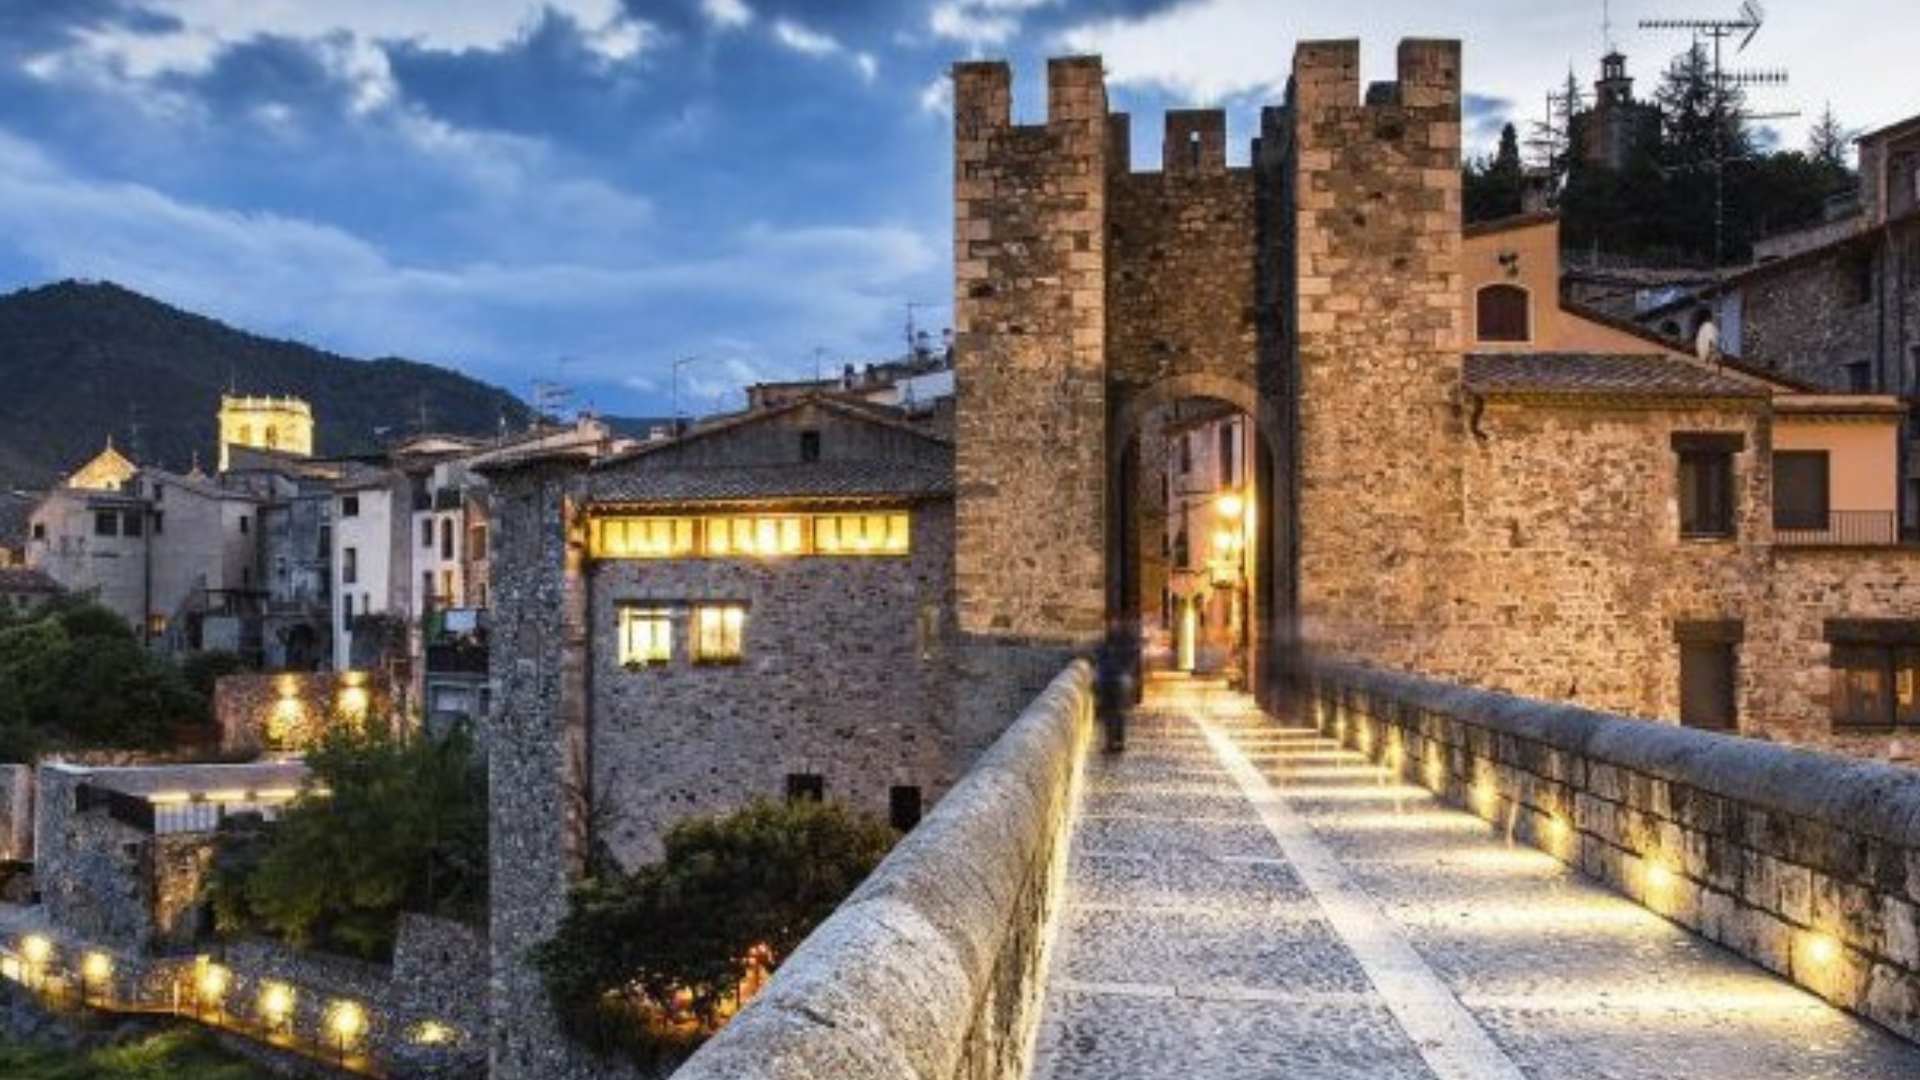 El pueblo más bonito para visitar en mayo está en Girona, según National Geographic